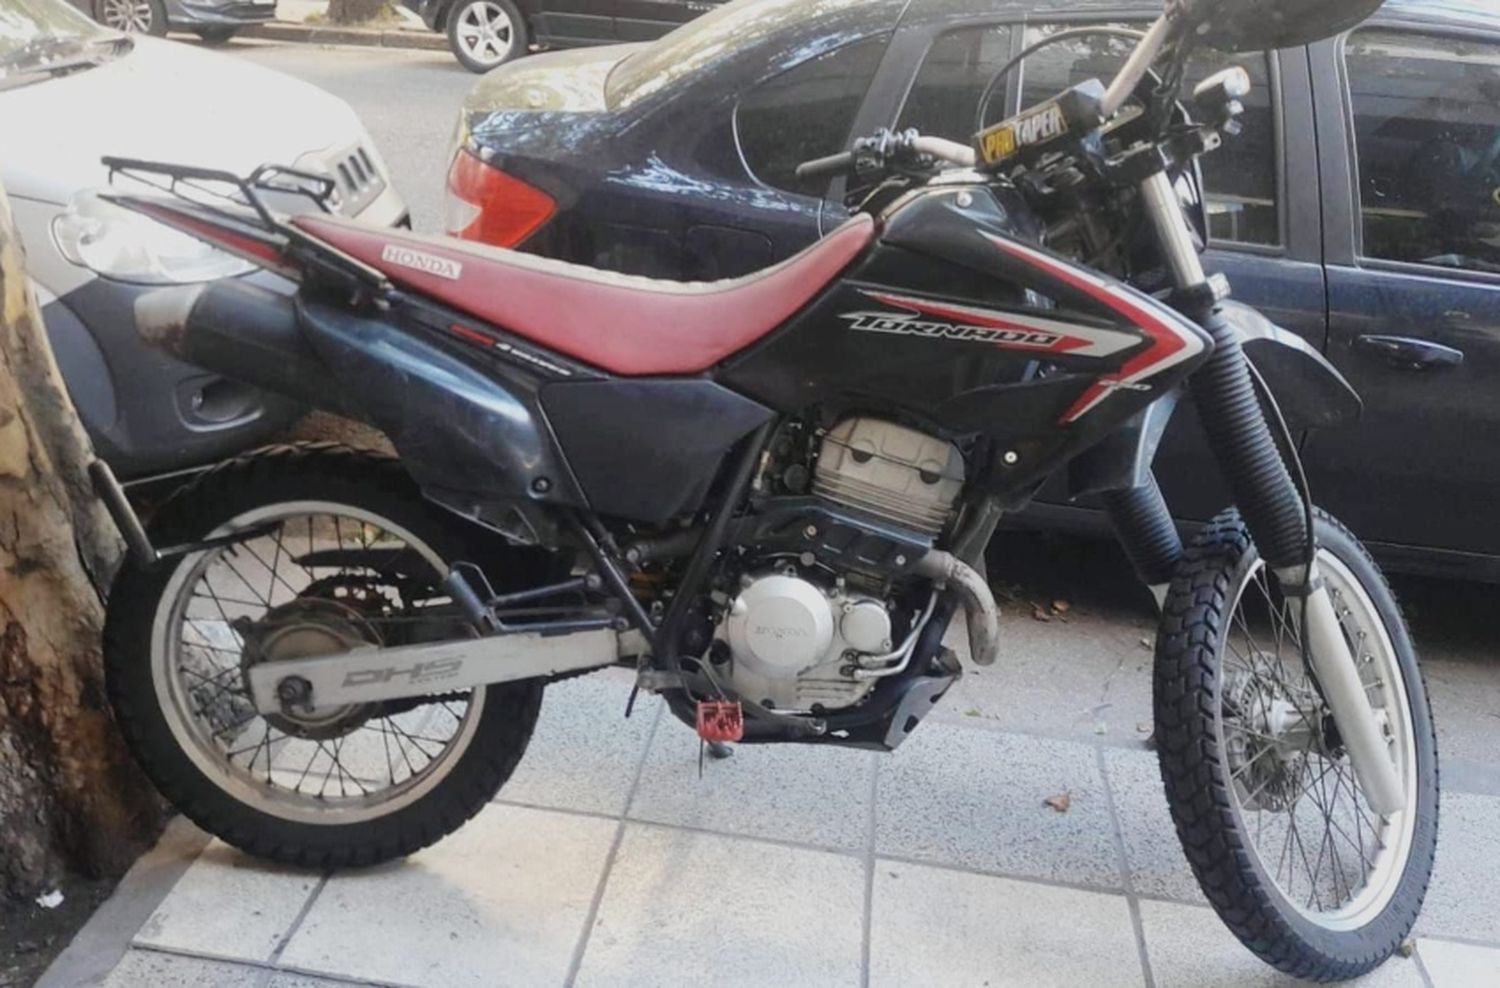 Un menor de edad trató de robar una moto en la zona de la Vieja Terminal